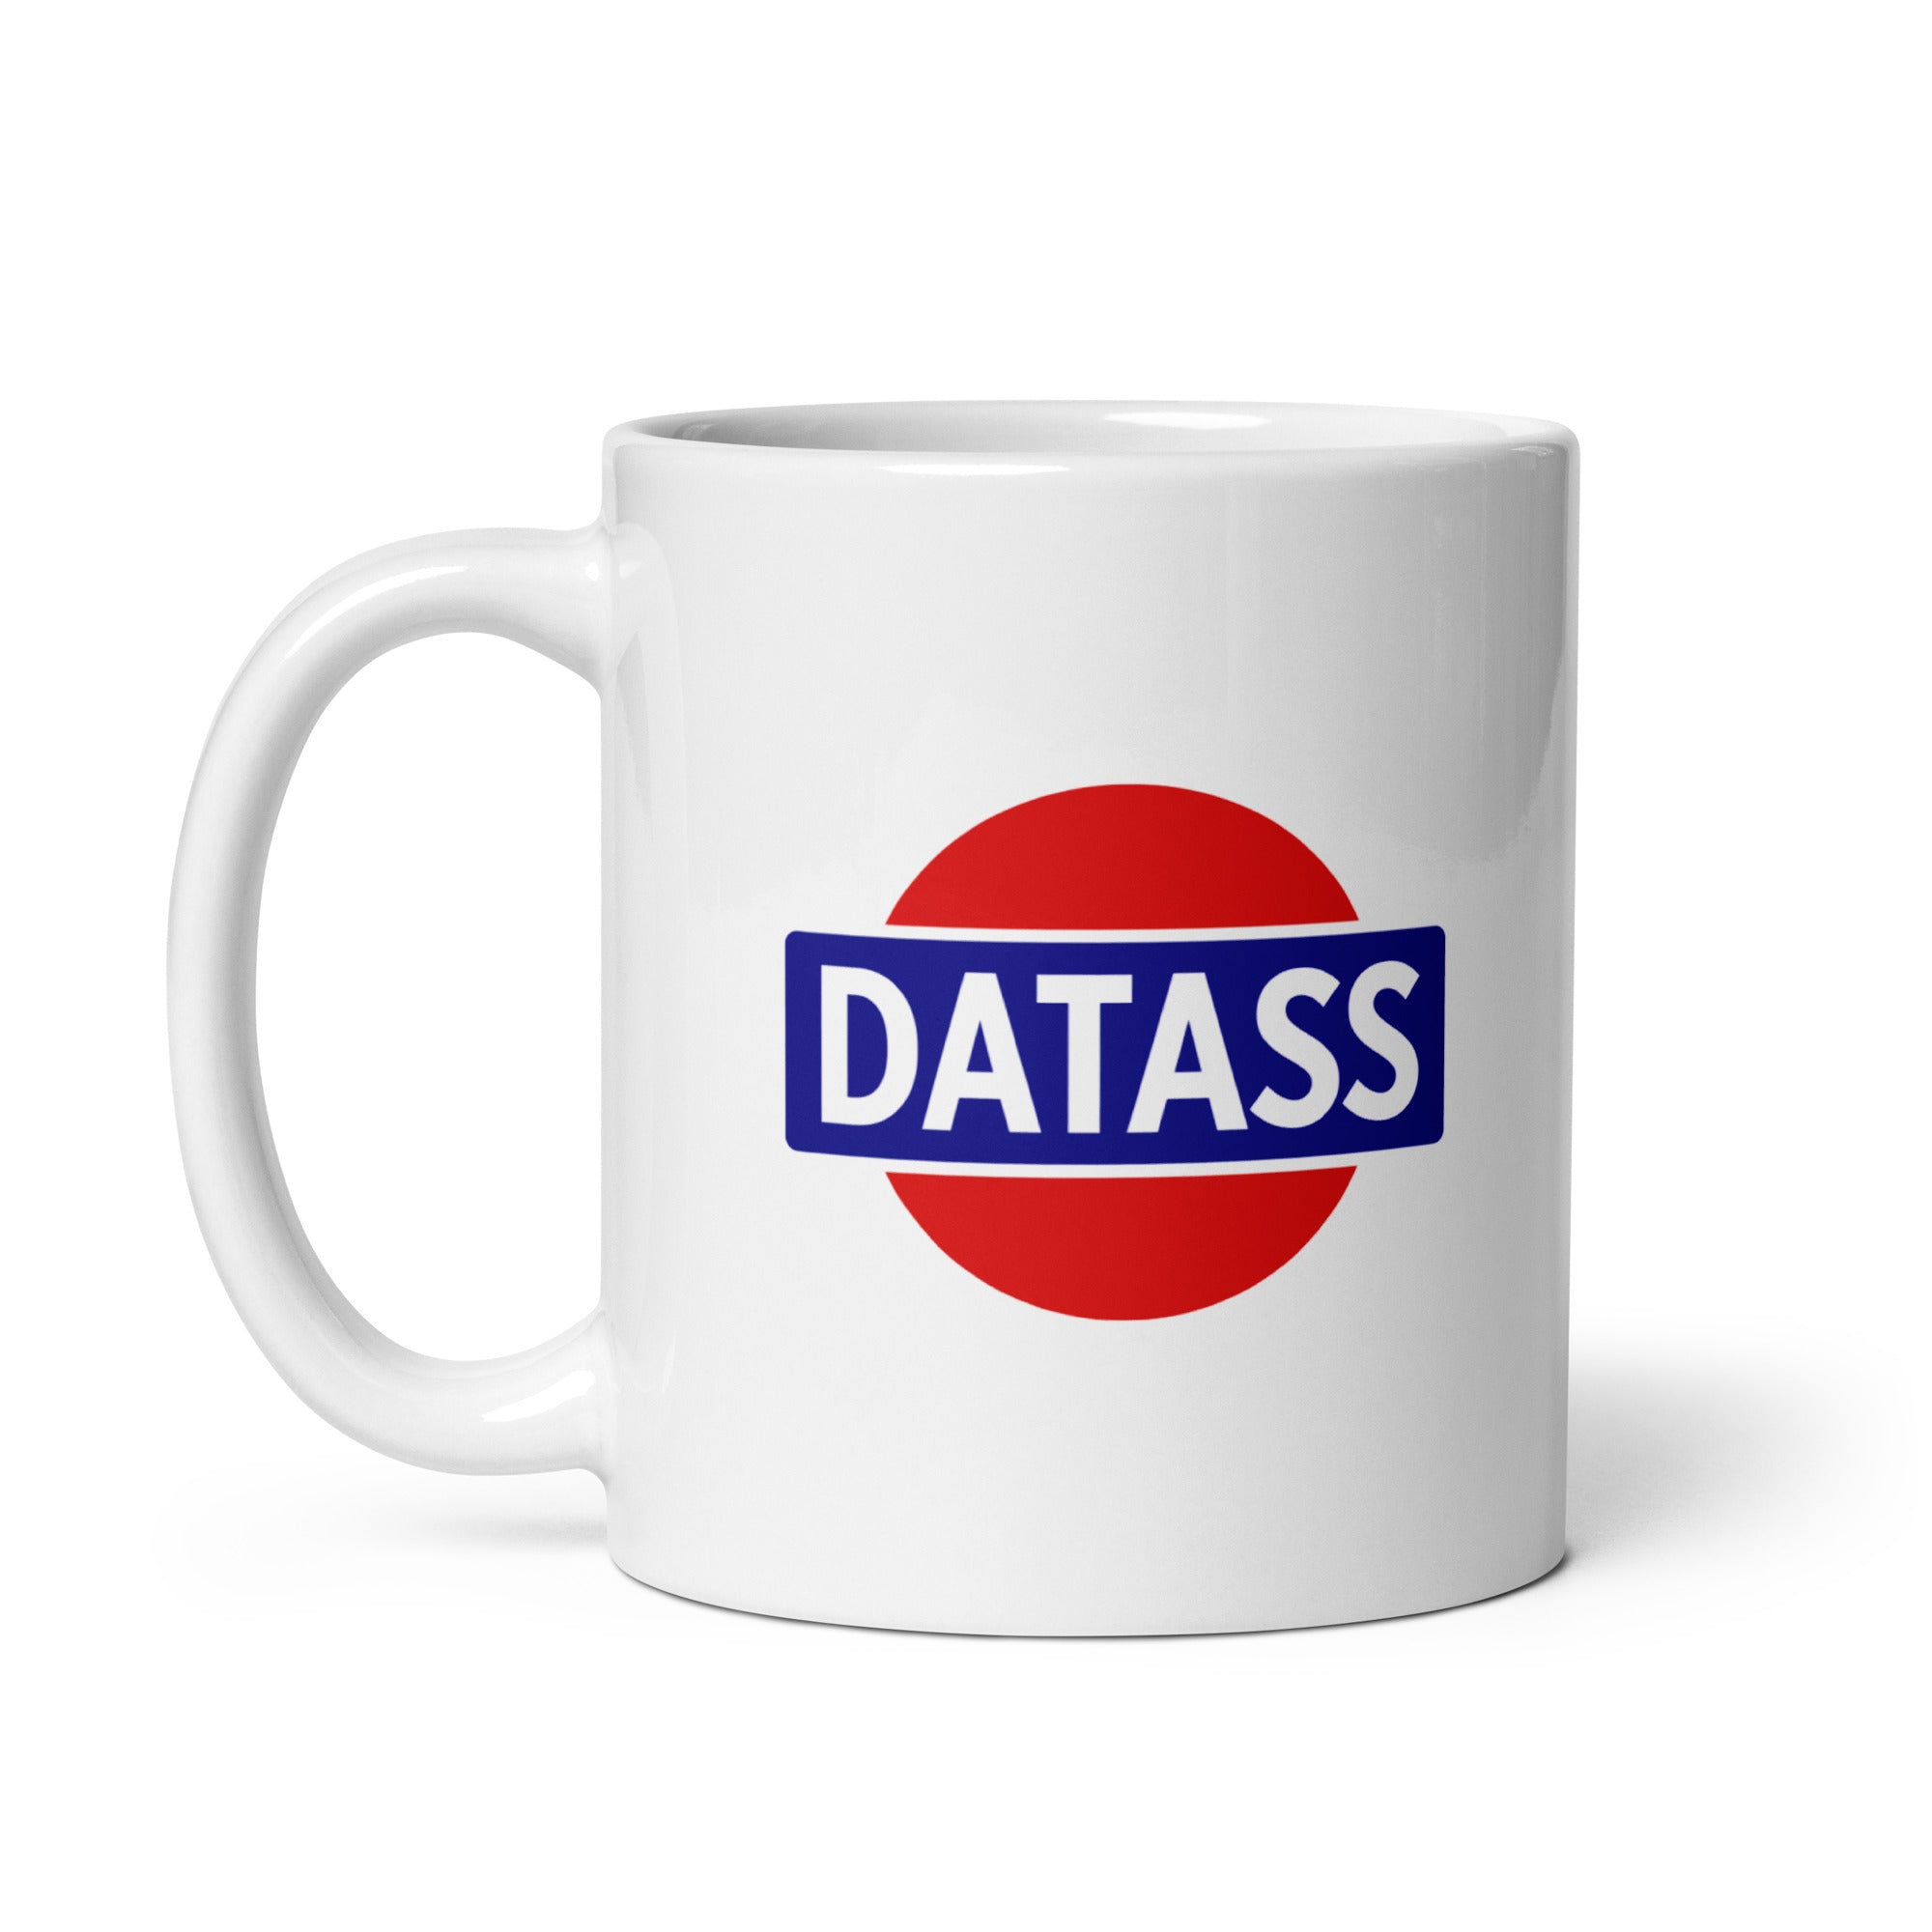 Datass Mug